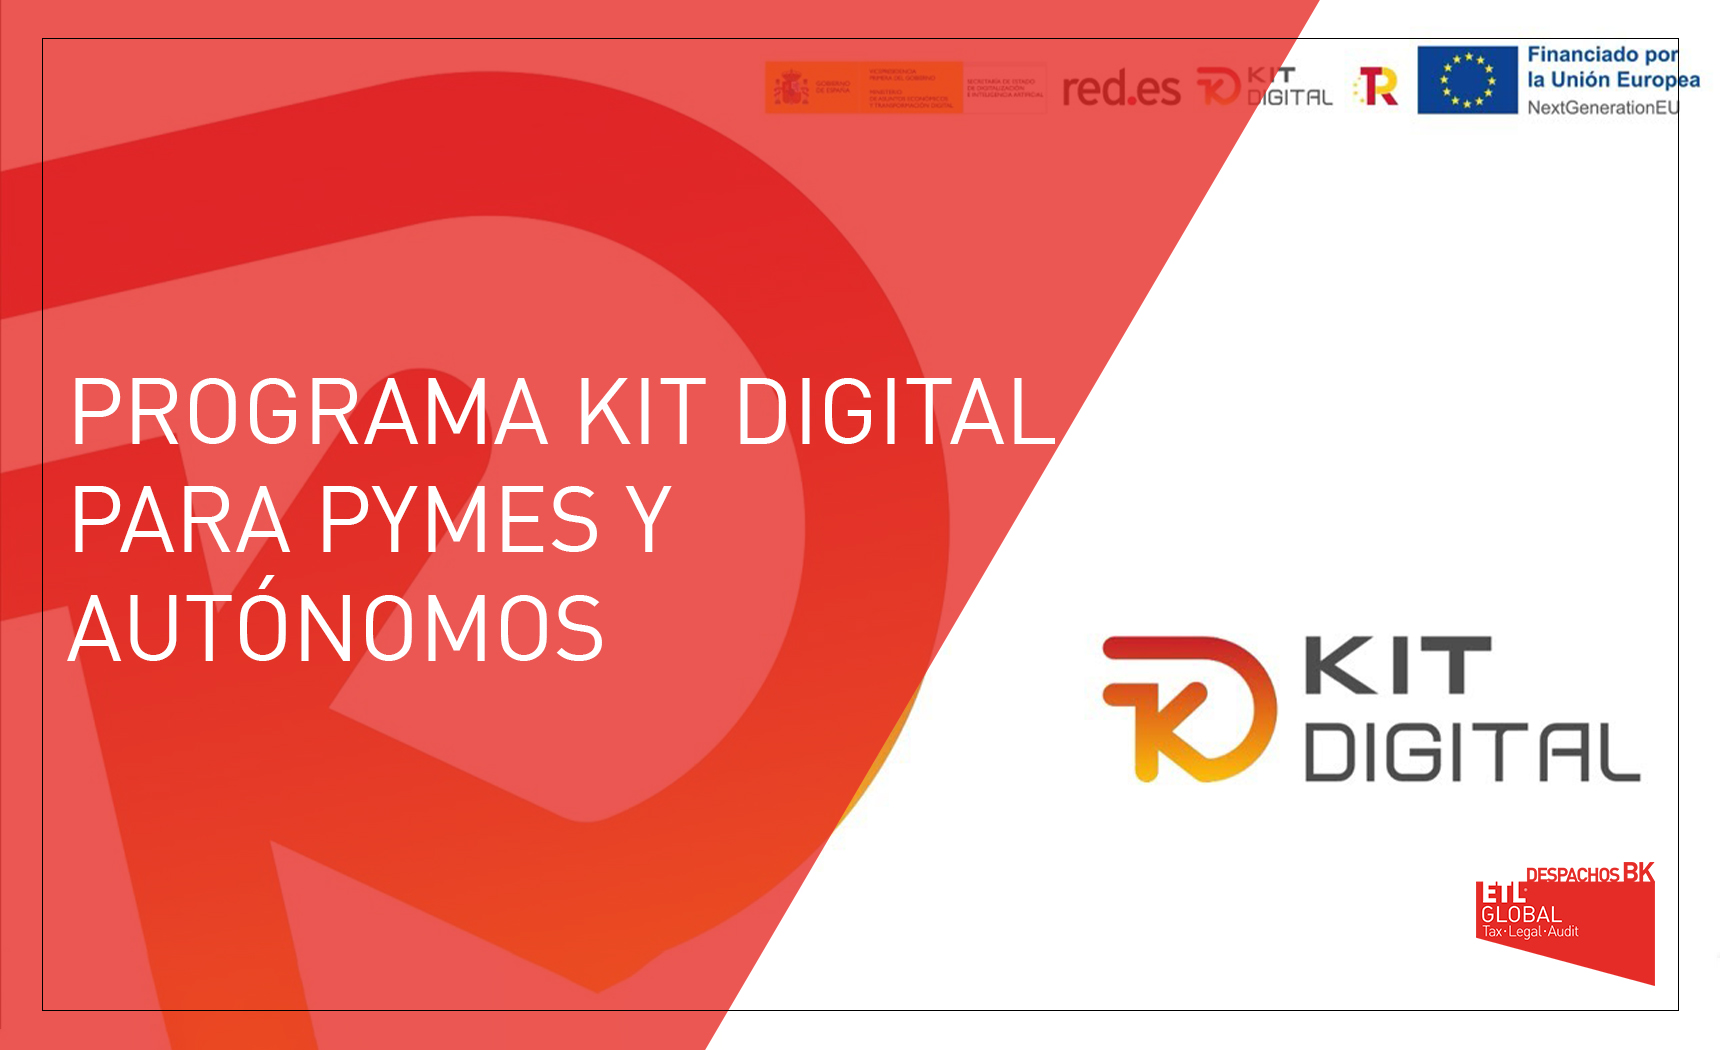 Kit Digital! Se abre el periodo de solicitud de las subvenciones a la digitalización